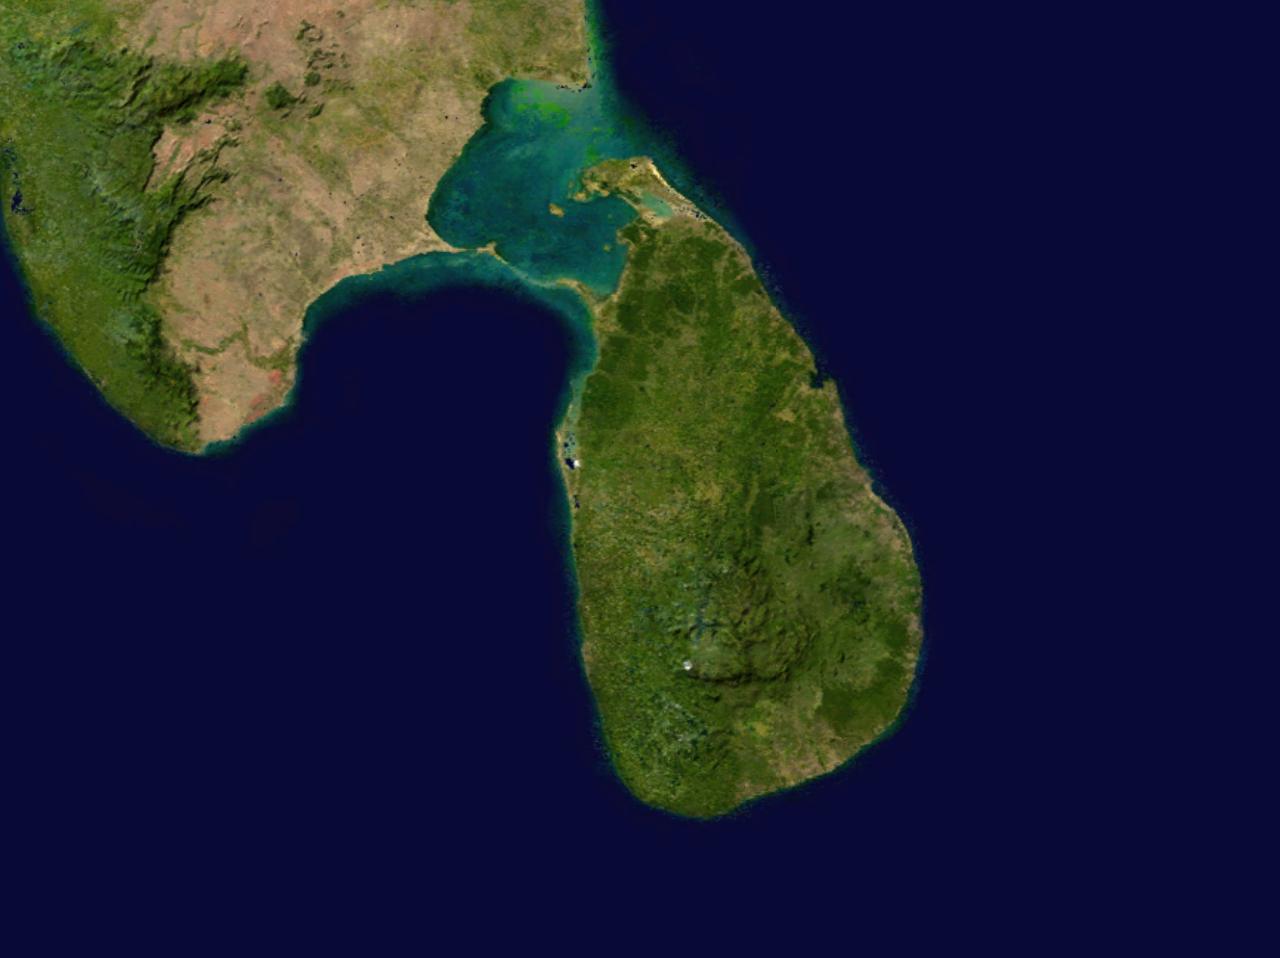 Điều đó sẽ giúp bạn thấy rõ những địa danh nổi tiếng như Colombo, Sigiriya, hay các bãi biển tuyệt đẹp như Unawatuna. Hãy tìm hiểu và lập kế hoạch cho chuyến du lịch của mình ngay trên bản đồ vệ tinh Sri Lanka